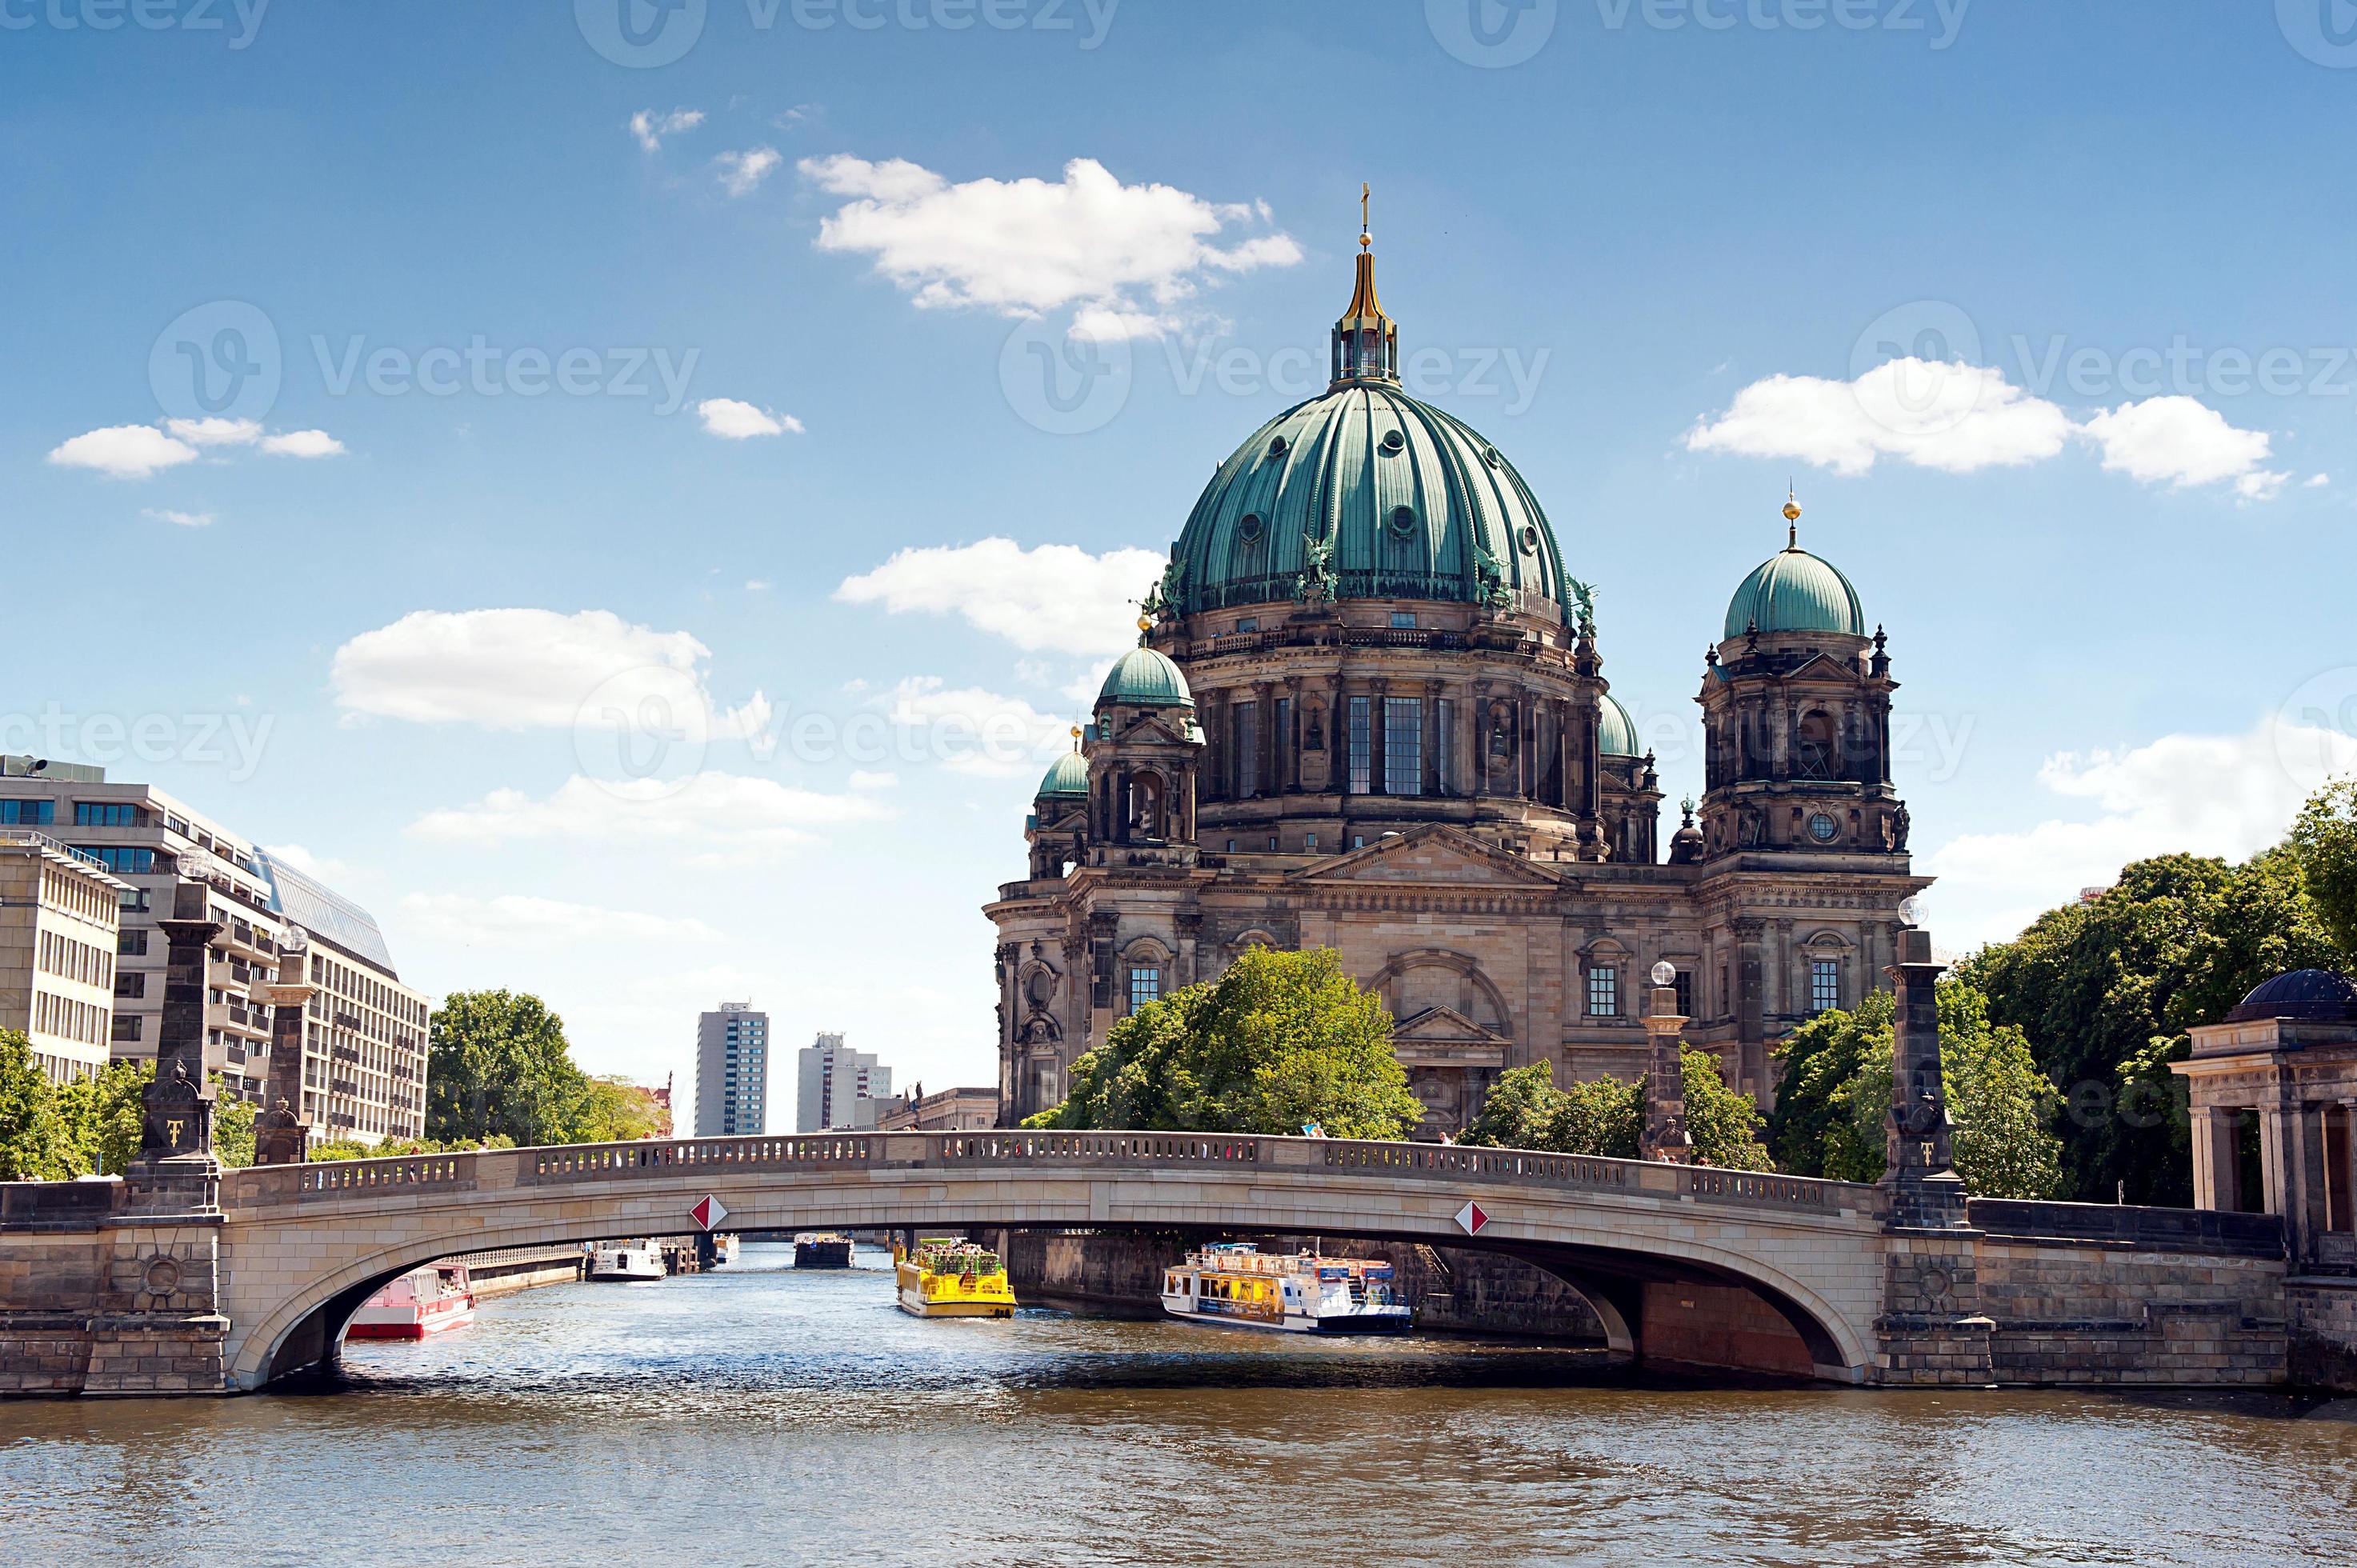 kathedraal van berlijn (berliner dom) foto